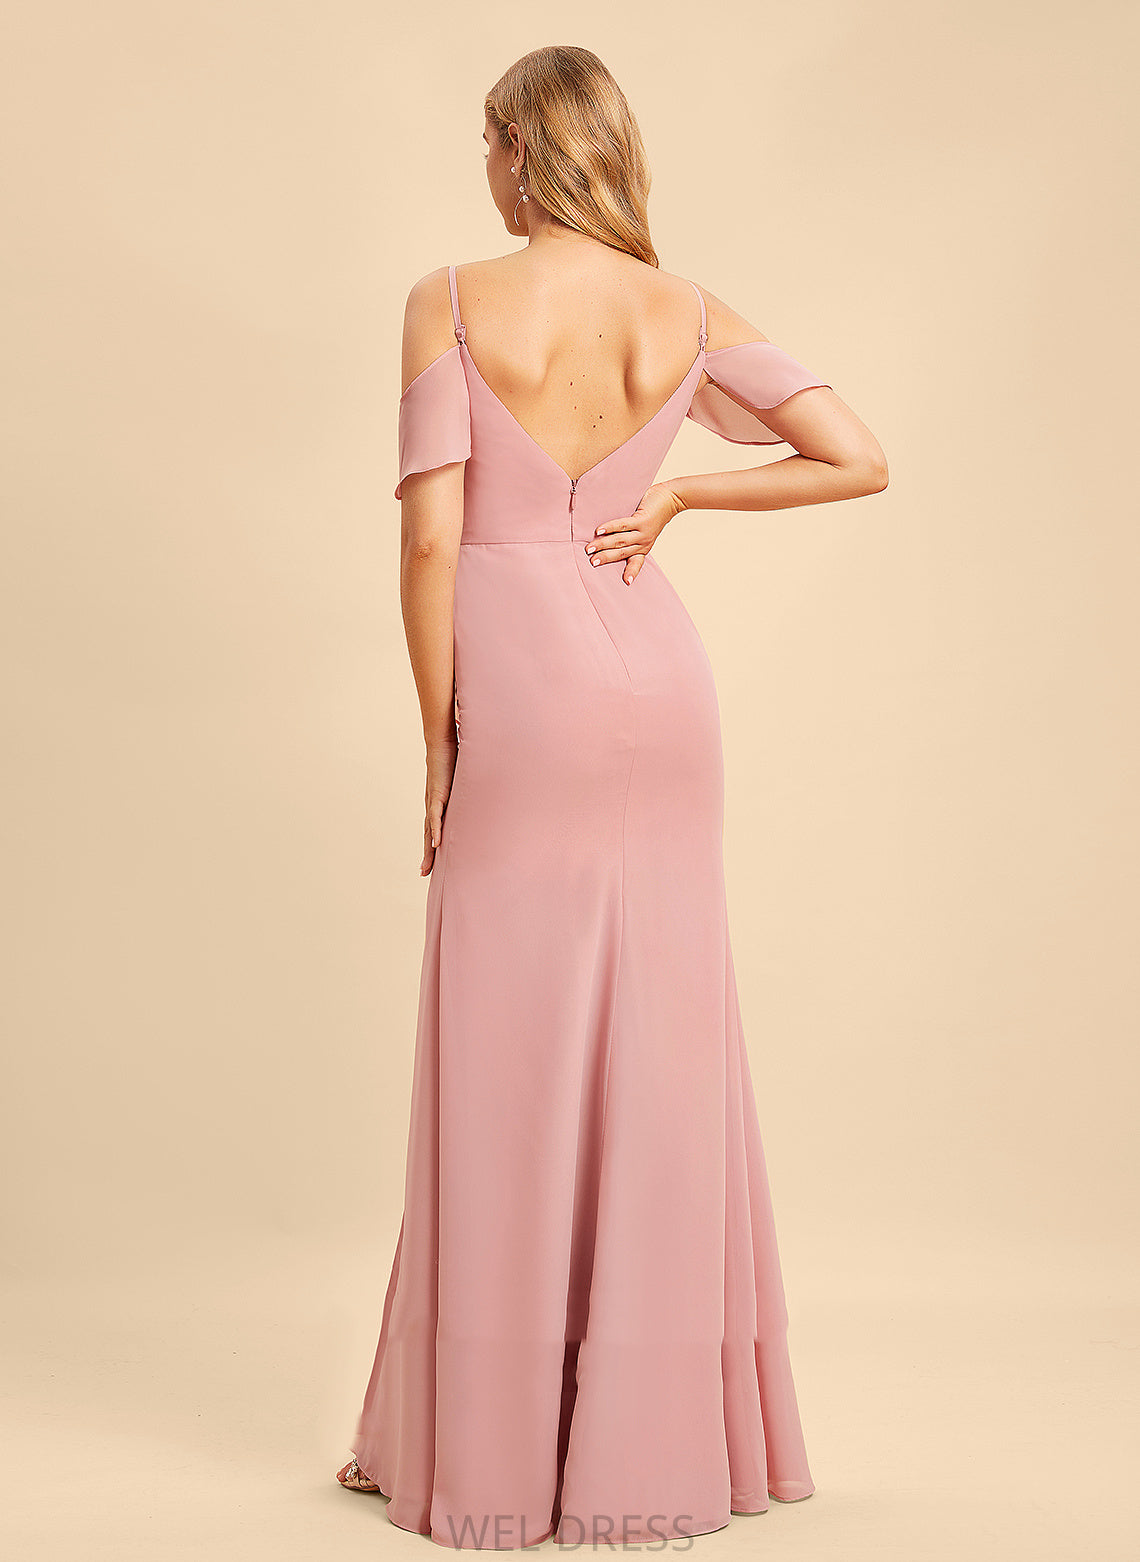 Silhouette Neckline V-neck Fabric Embellishment Length Floor-Length A-Line Ruffle SplitFront Alexandra Natural Waist Bridesmaid Dresses